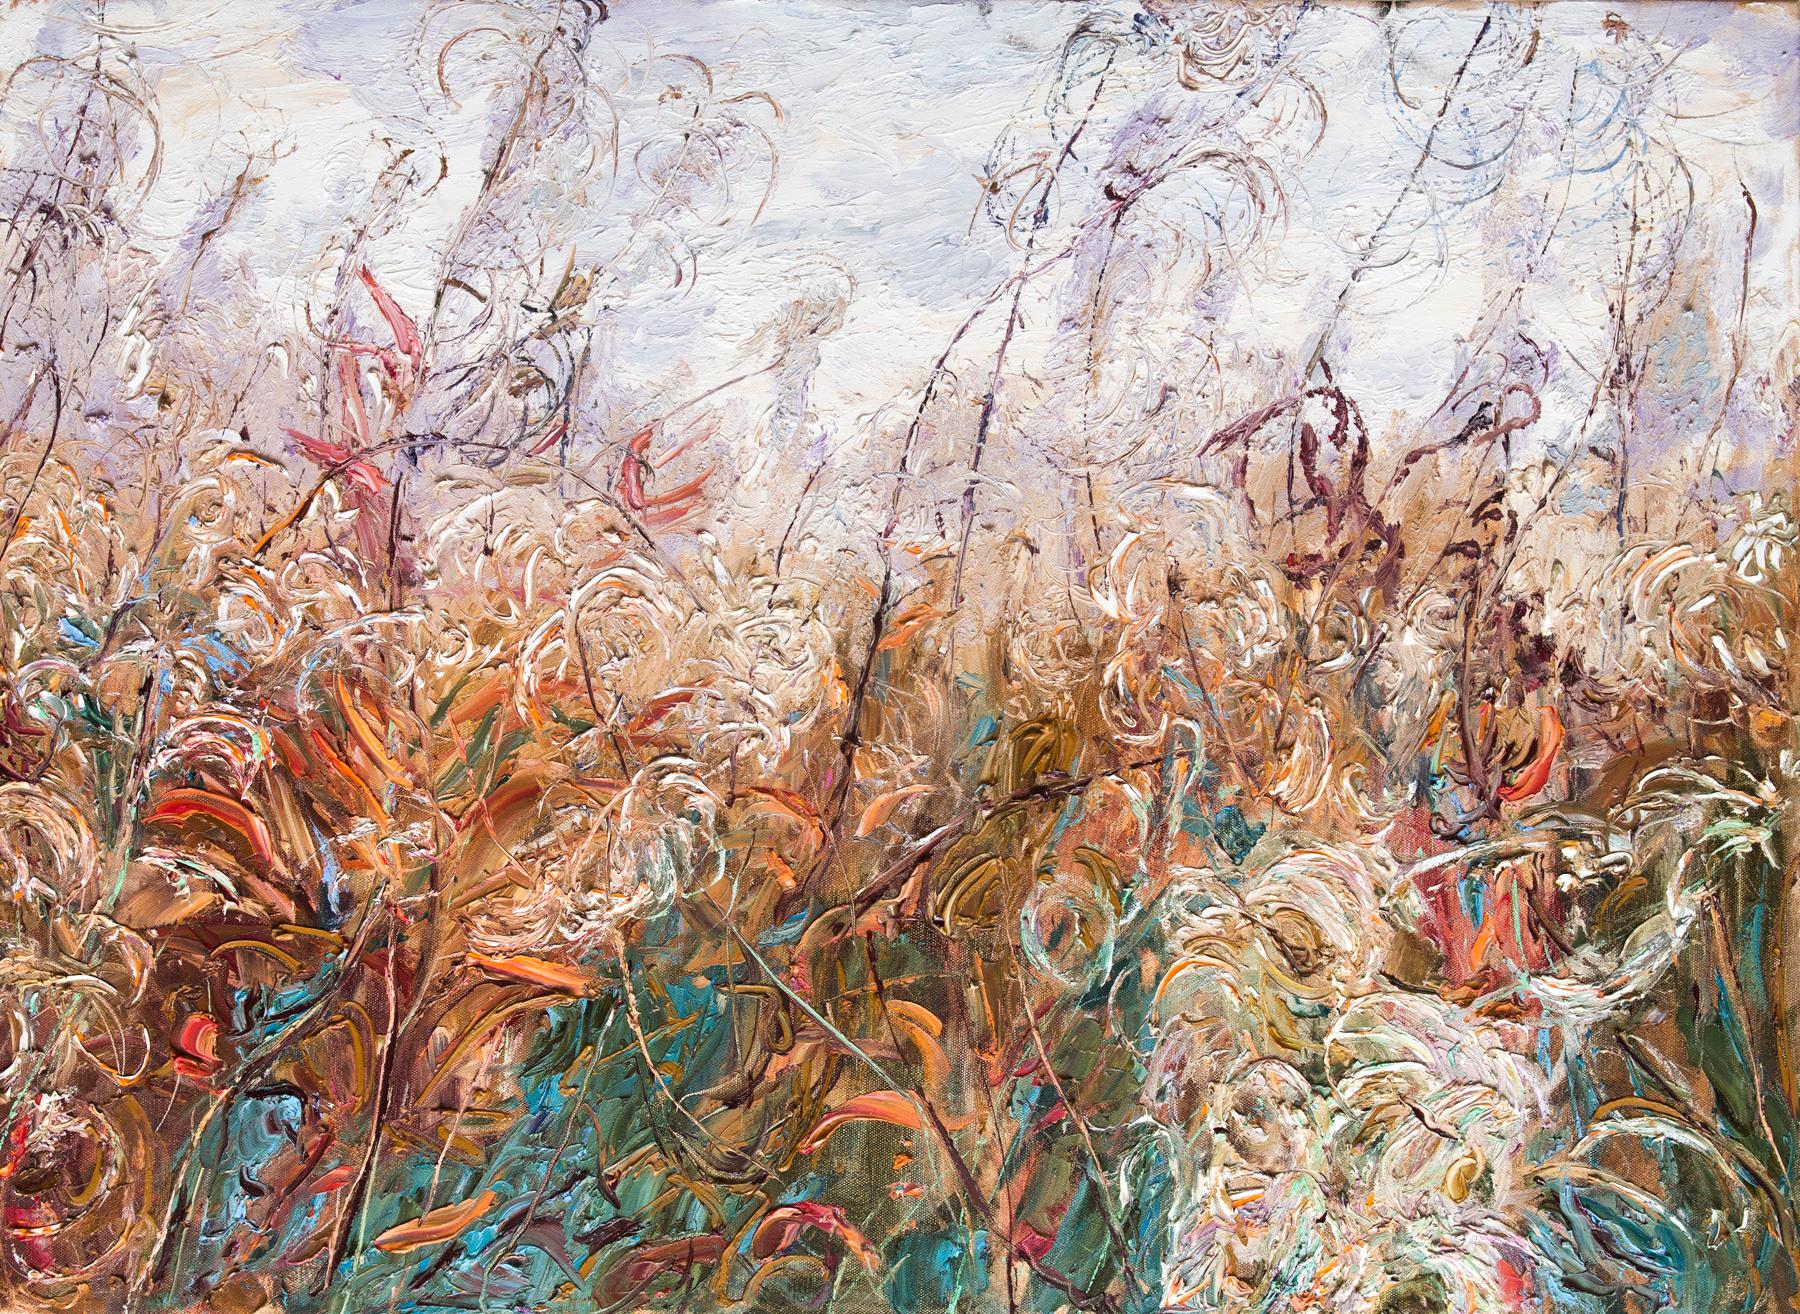 Auutmn grass II. Original modern art painting